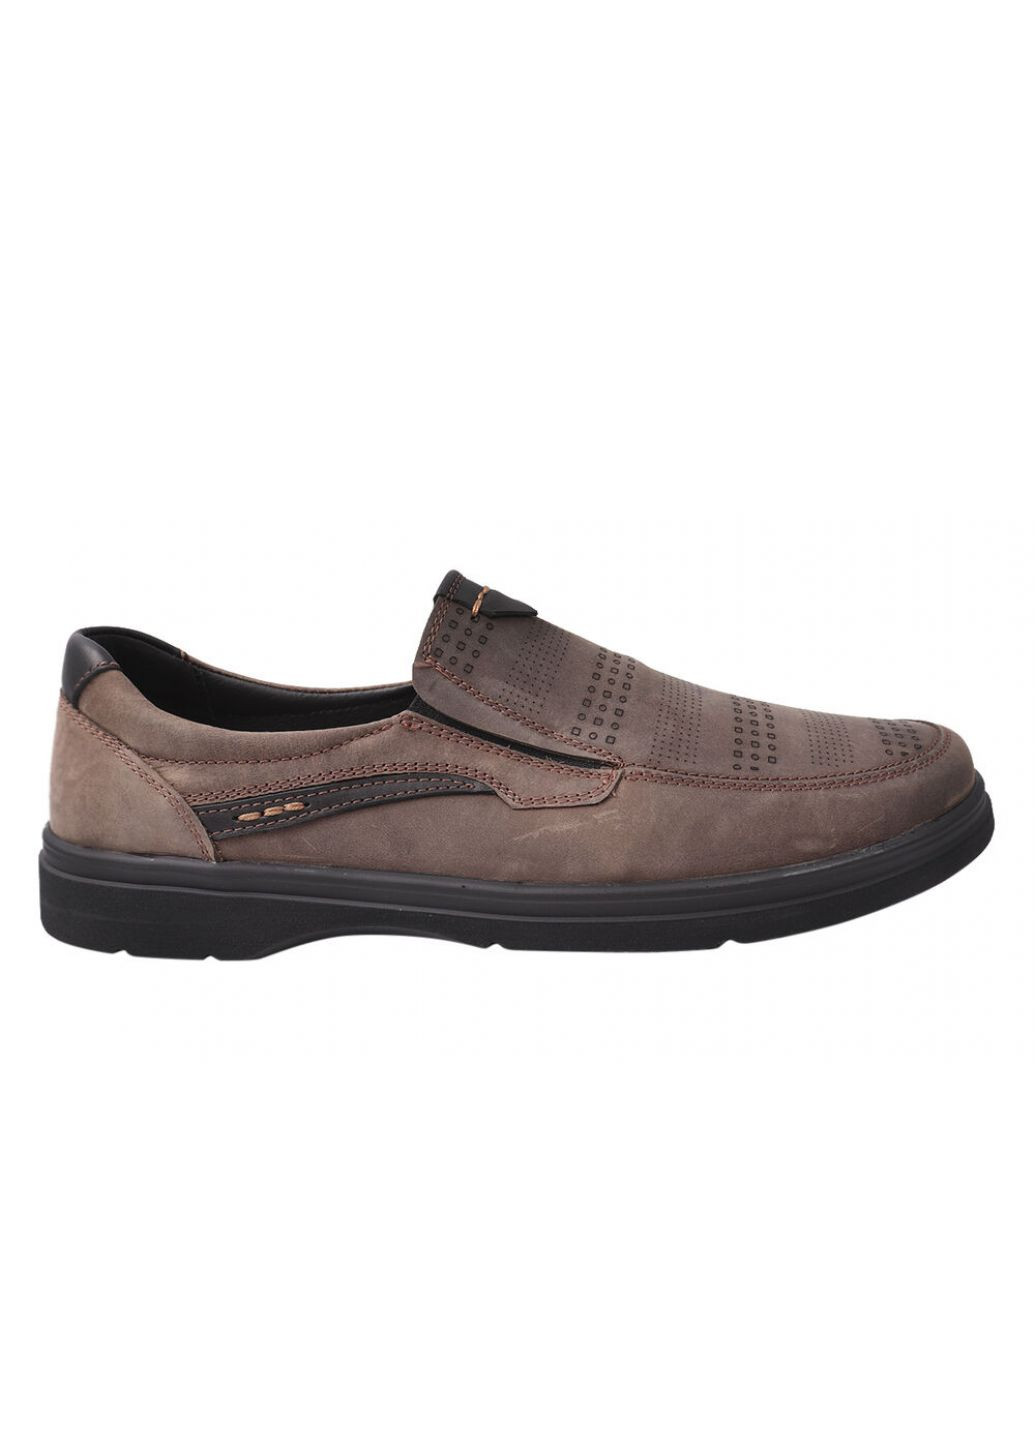 Туфлі чоловічі з натуральної шкіри (нубук), на низькому ходу, колір Визон, Vadrus 330-21dtc (257438386)